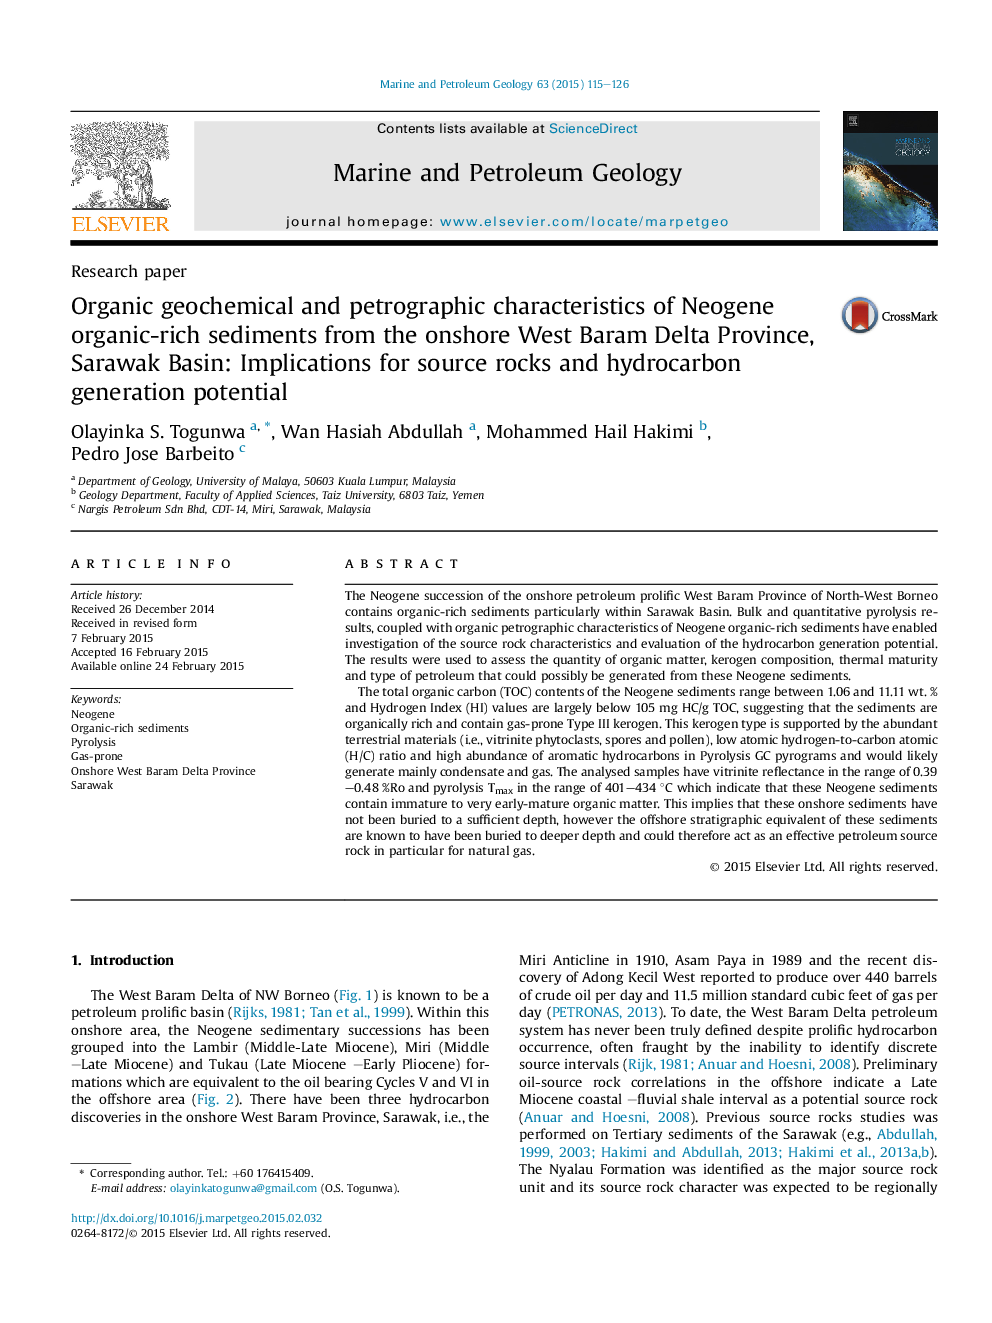 ویژگی های ژئوشیمیایی و پتروگرافی ارگانیک از رسوبات غنی از آلی غنی نئوژن از منطقه دریای غرب والیت بارام، حوضه ساراواک: پیامدهای سنگ های منبع و پتانسیل تولید هیدروکربن 